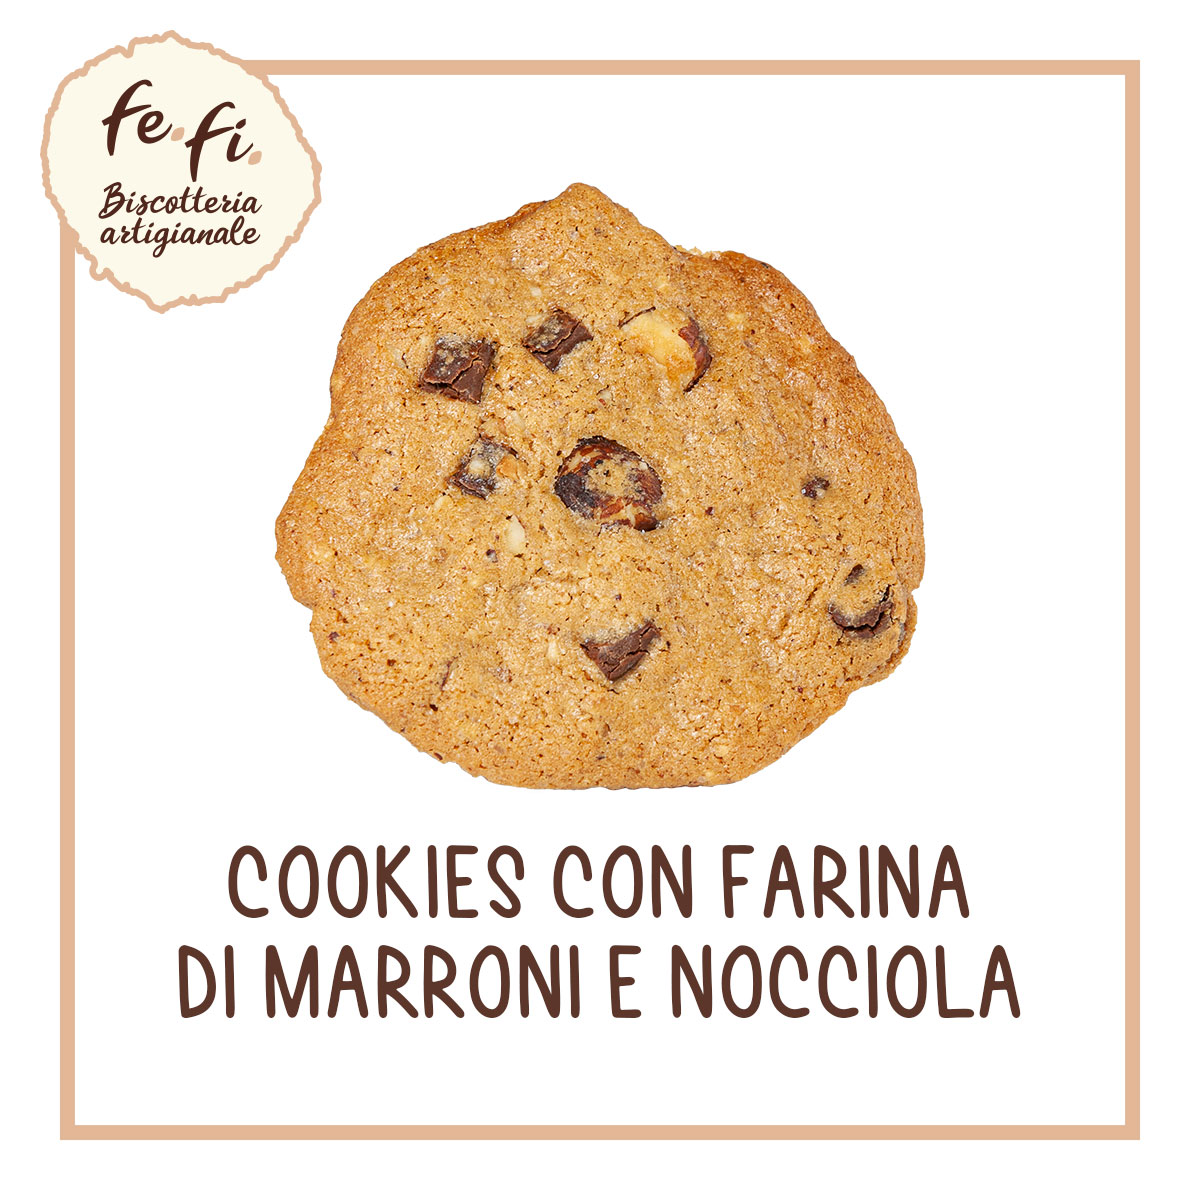 Cookies con farina di marroni e nocciola – Biscotteria Artigianale Fe.Fi. Spoleto